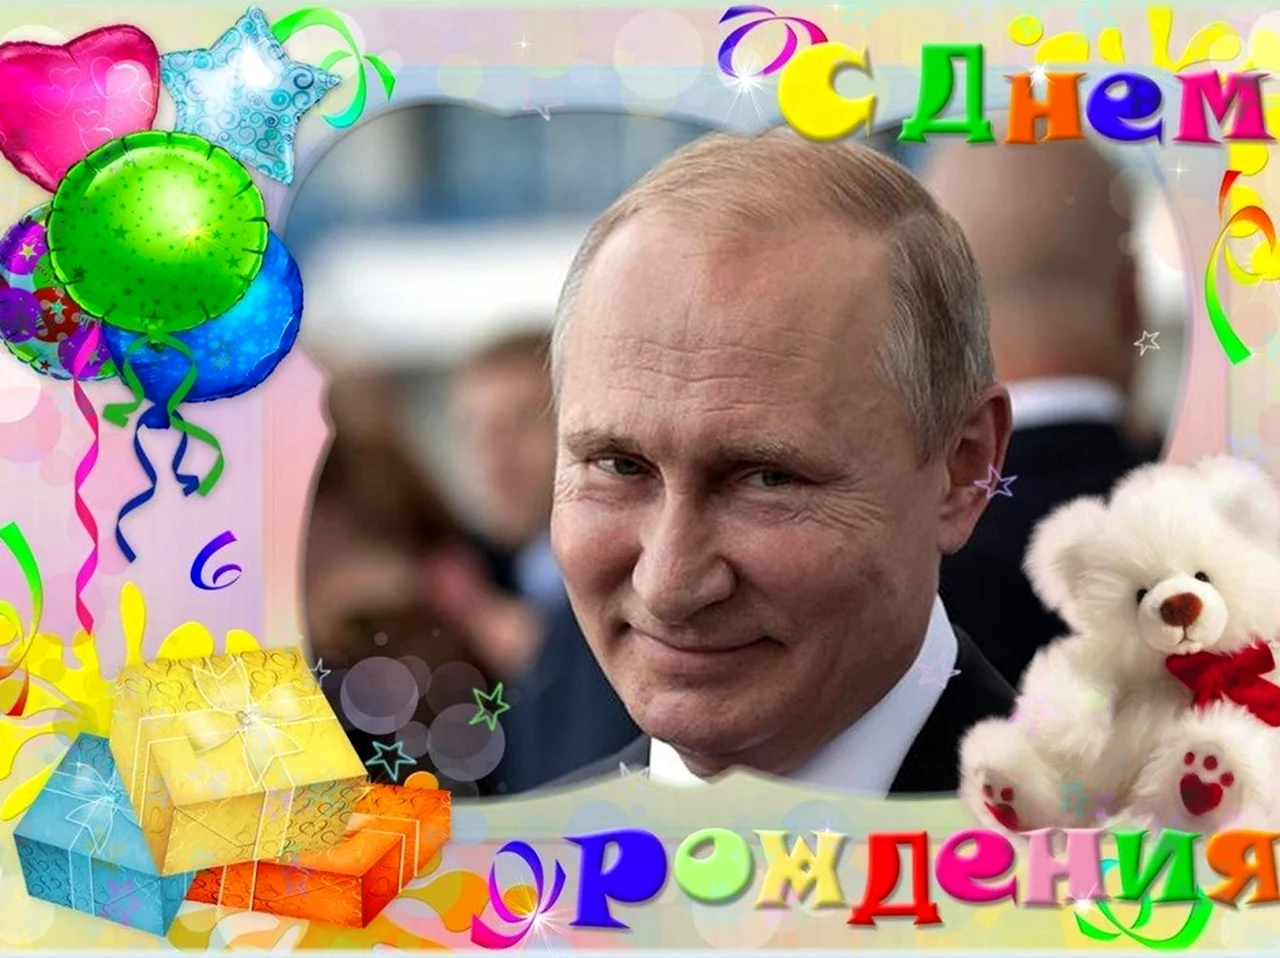 Путин с днем рождения. Красивая картинка